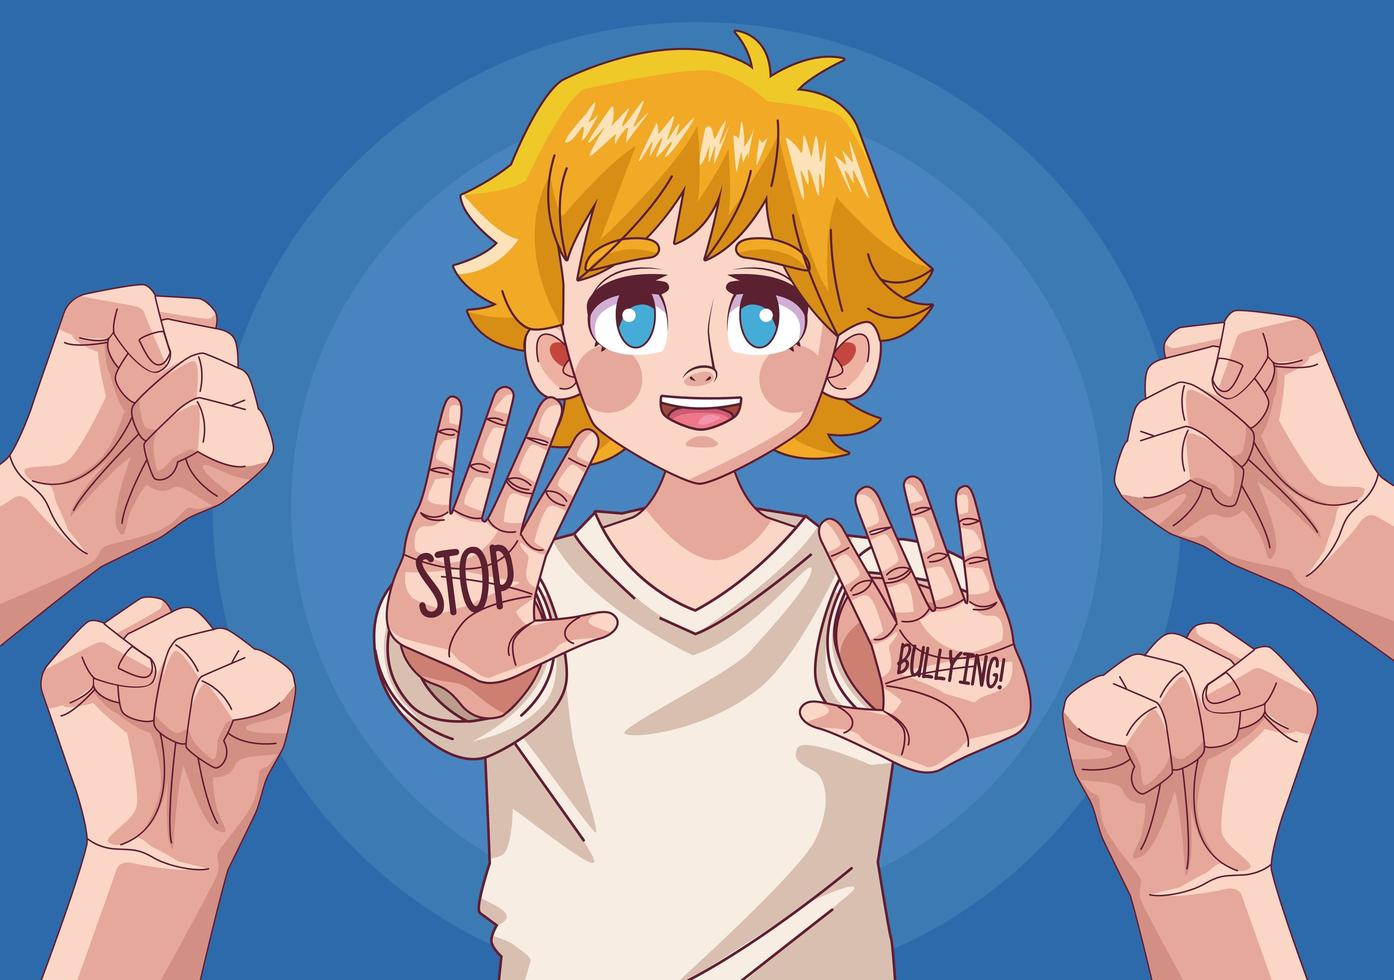 Comic-Anime-Figur des jugendlichen blonden Jungen mit den Händen, die aufhören vektor